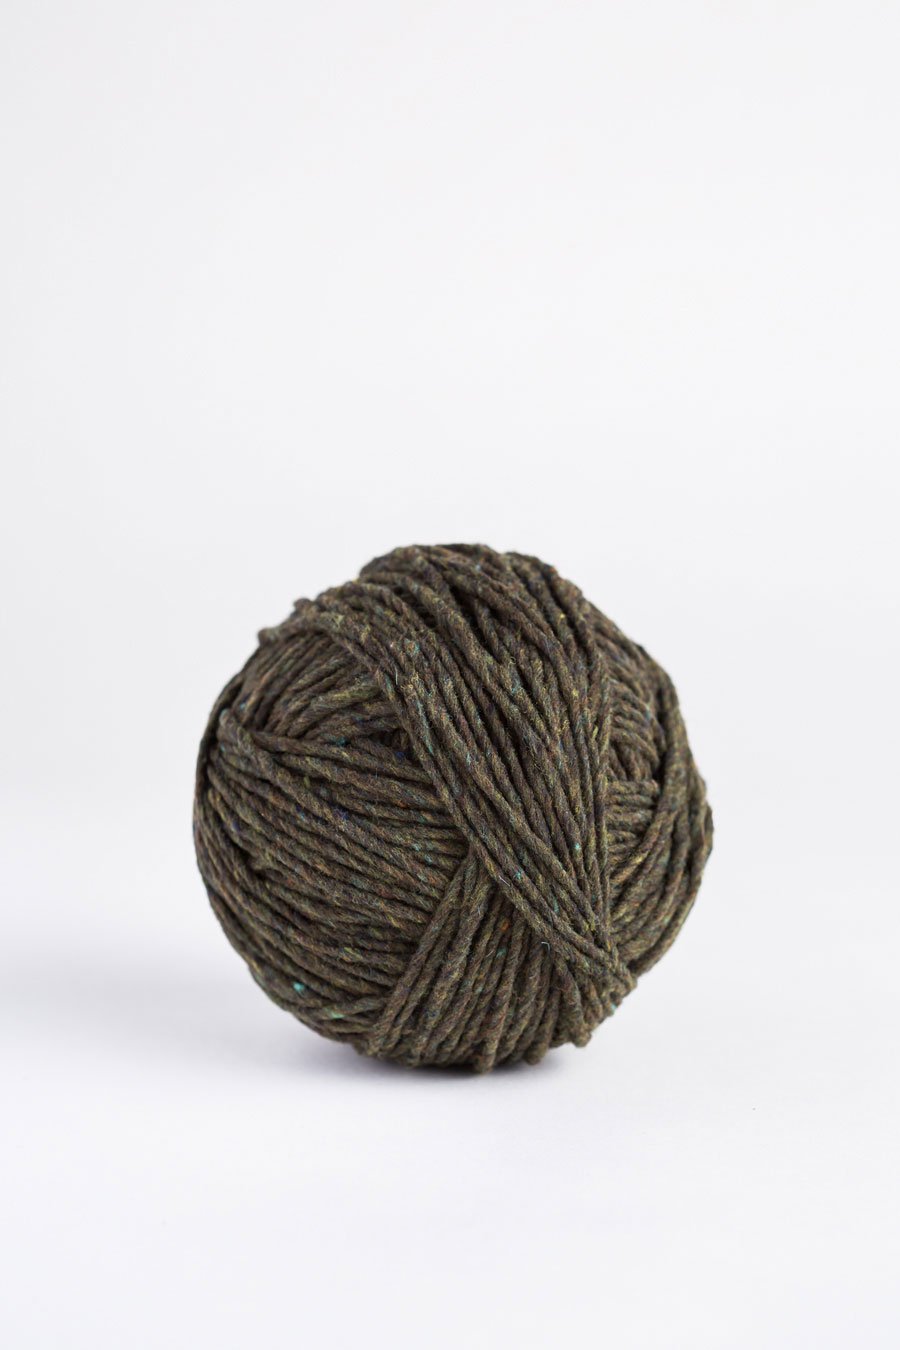 Brooklyn Tweed Quarry Yarn - Serpentine